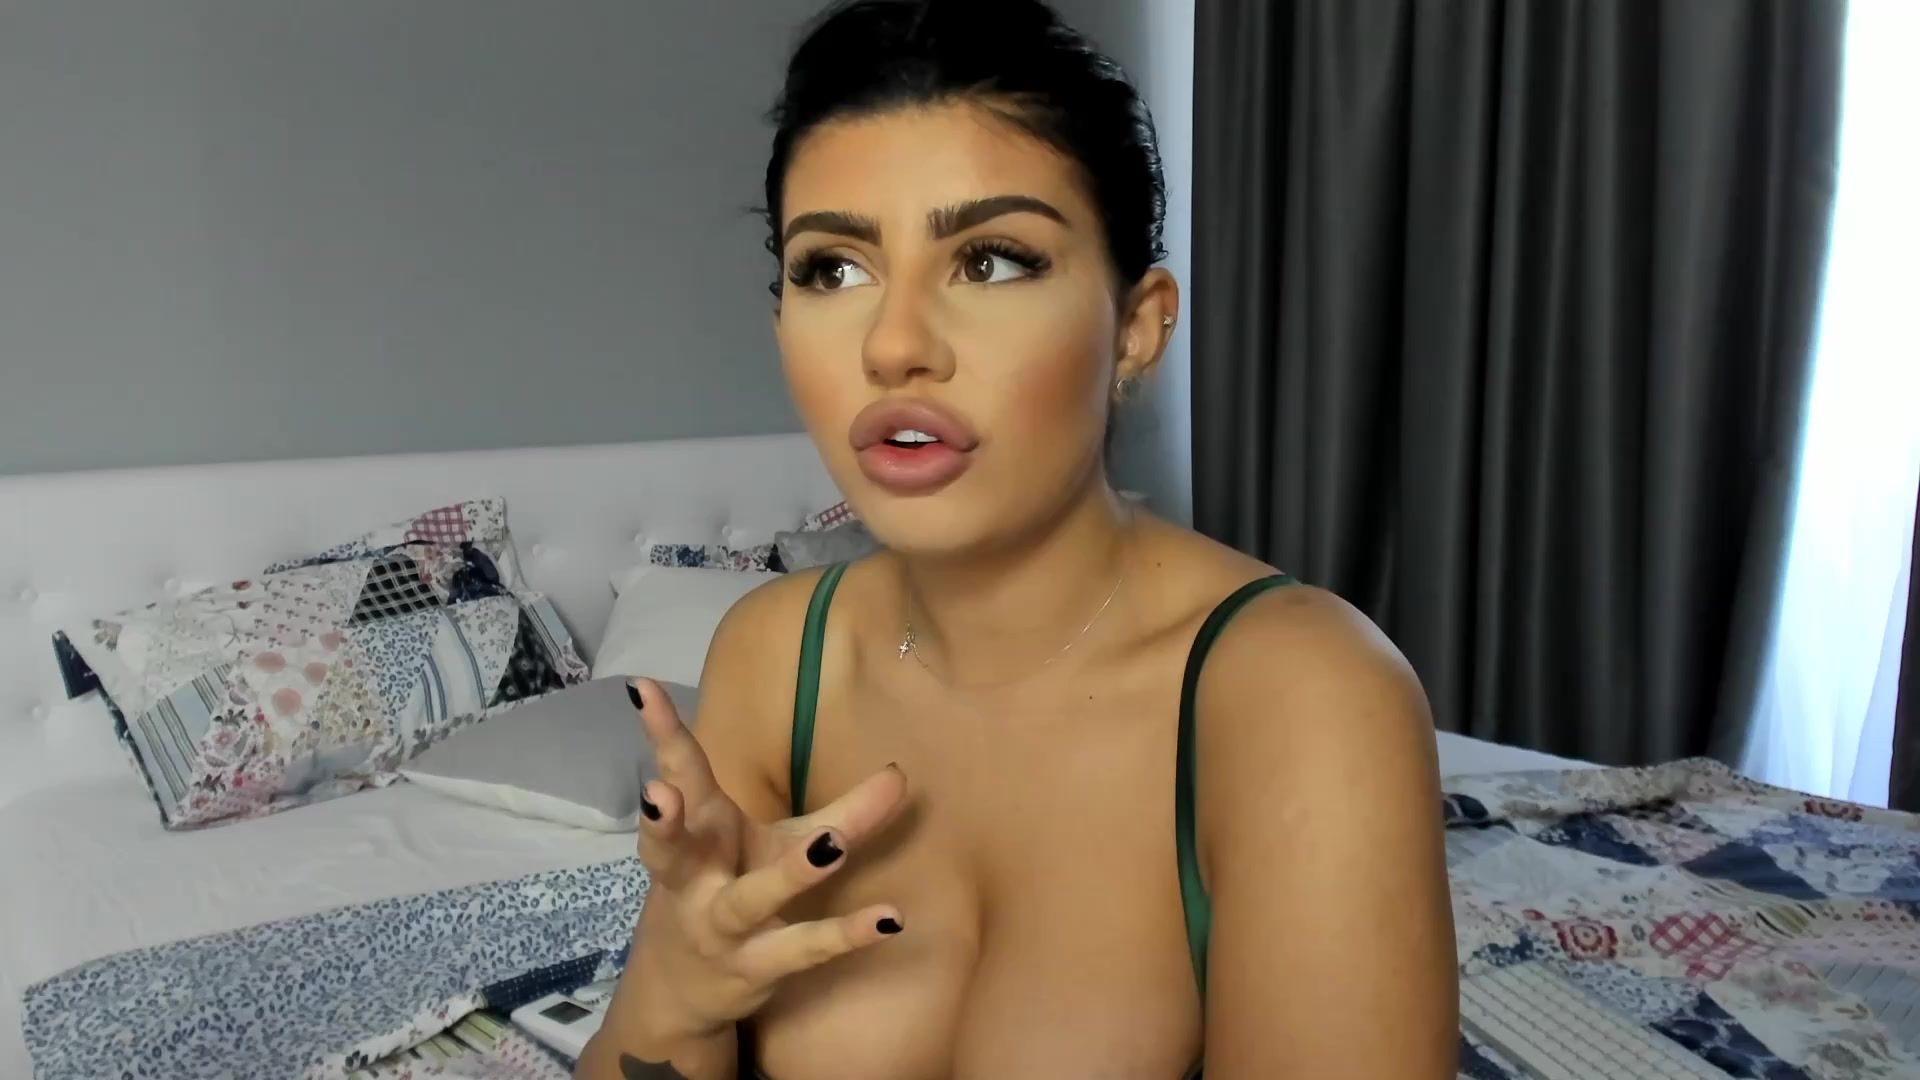 Super Busty latina webcam model Monique Comedor